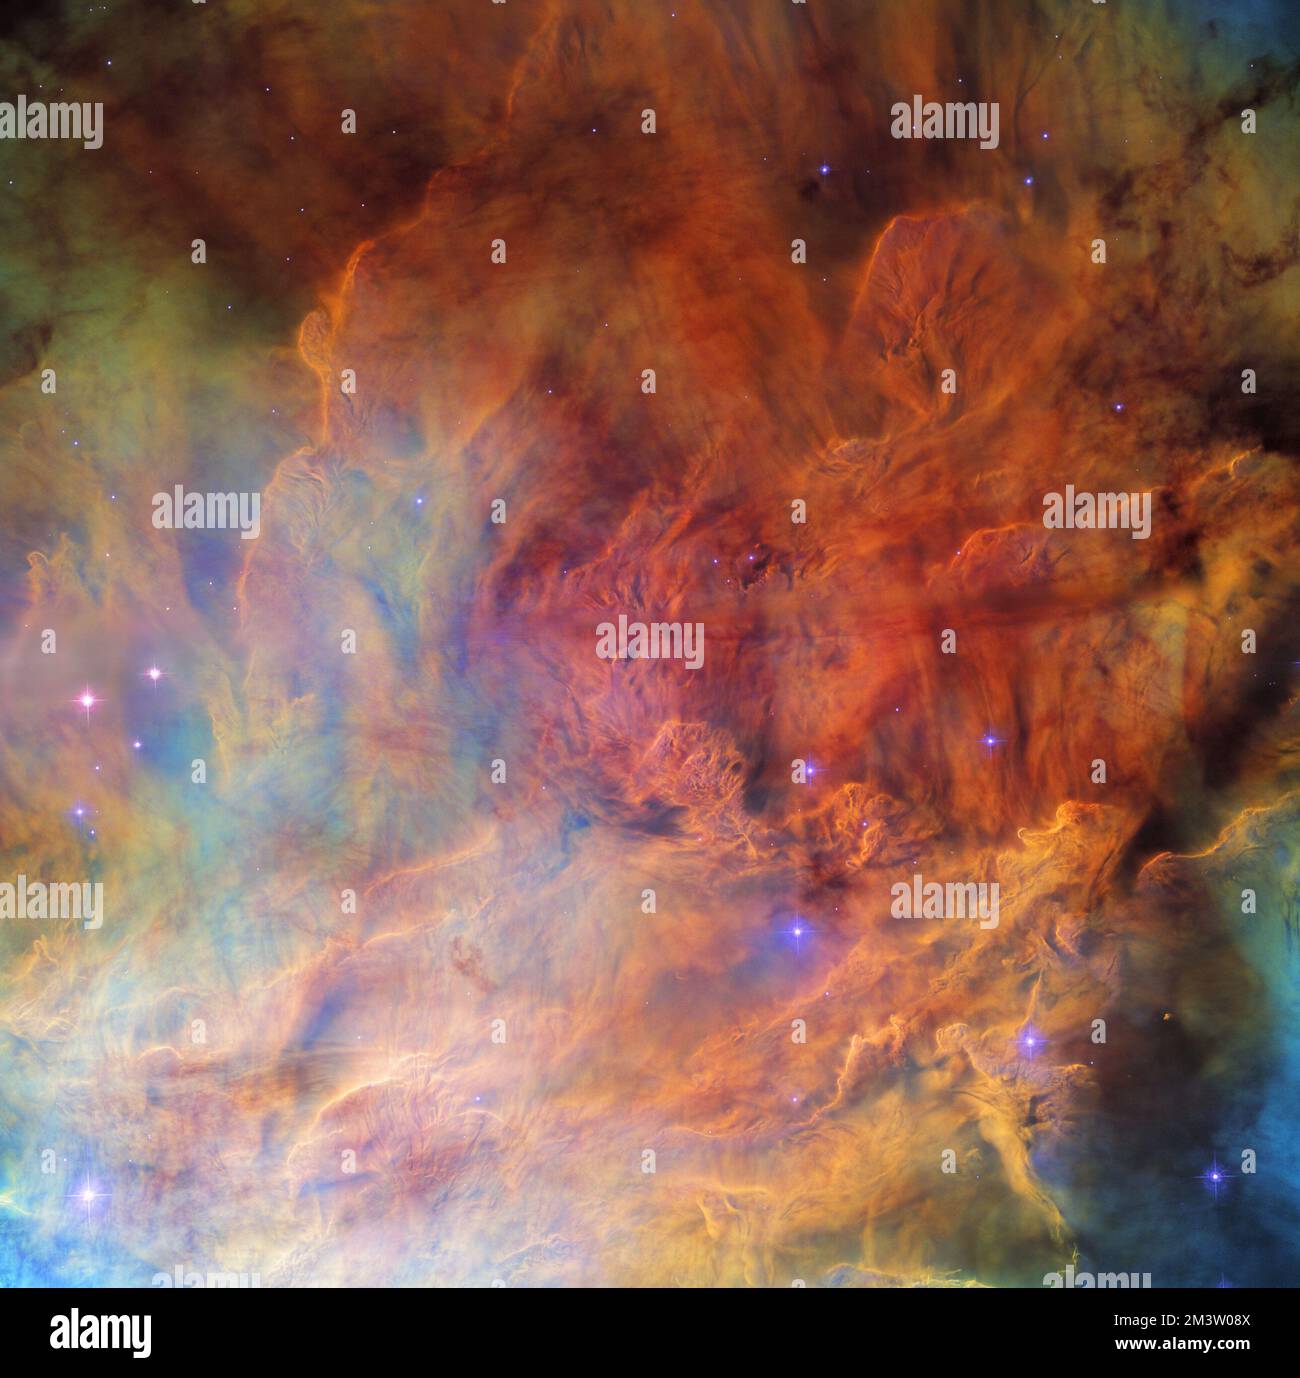 Spazio profondo. 16th Dec, 2022. Una parte del cluster aperto NGC 6530 appare come una parete di fumo ruggito costellato di stelle in questa immagine dal telescopio spaziale NASA/ESA Hubble. NGC 6530 è una collezione di diverse migliaia di stelle giacenti intorno a 4350 anni luce dalla Terra nella costellazione del Sagittario. Il cluster è situato all'interno della più grande Laguna Nebula, una gigantesca nube interstellare di gas e polvere. È la nebulosa che dà a questa immagine il suo aspetto distintamente smockey; le nuvole di gas interstellare e polvere si estendono da un lato all'altro di questa immagine. (Credit Image: © NASA/ESA/Hubble/ZUM Foto Stock